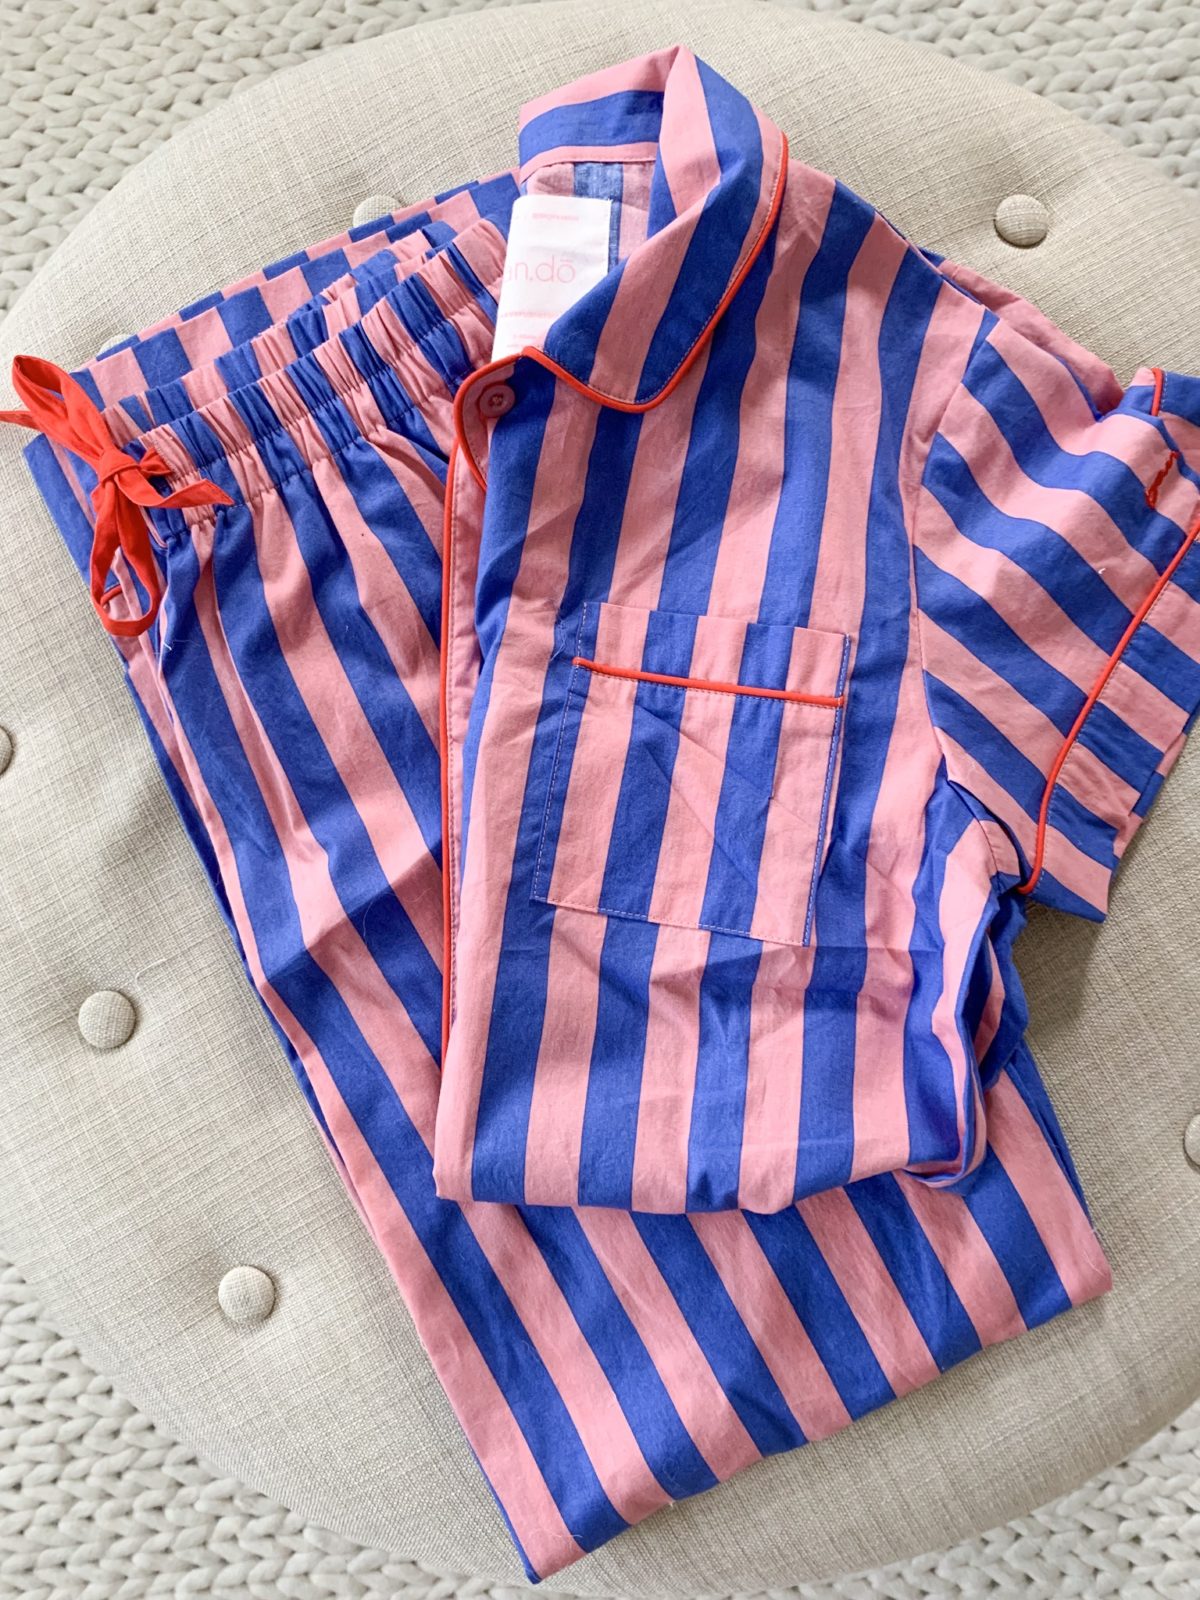 striped pajamas